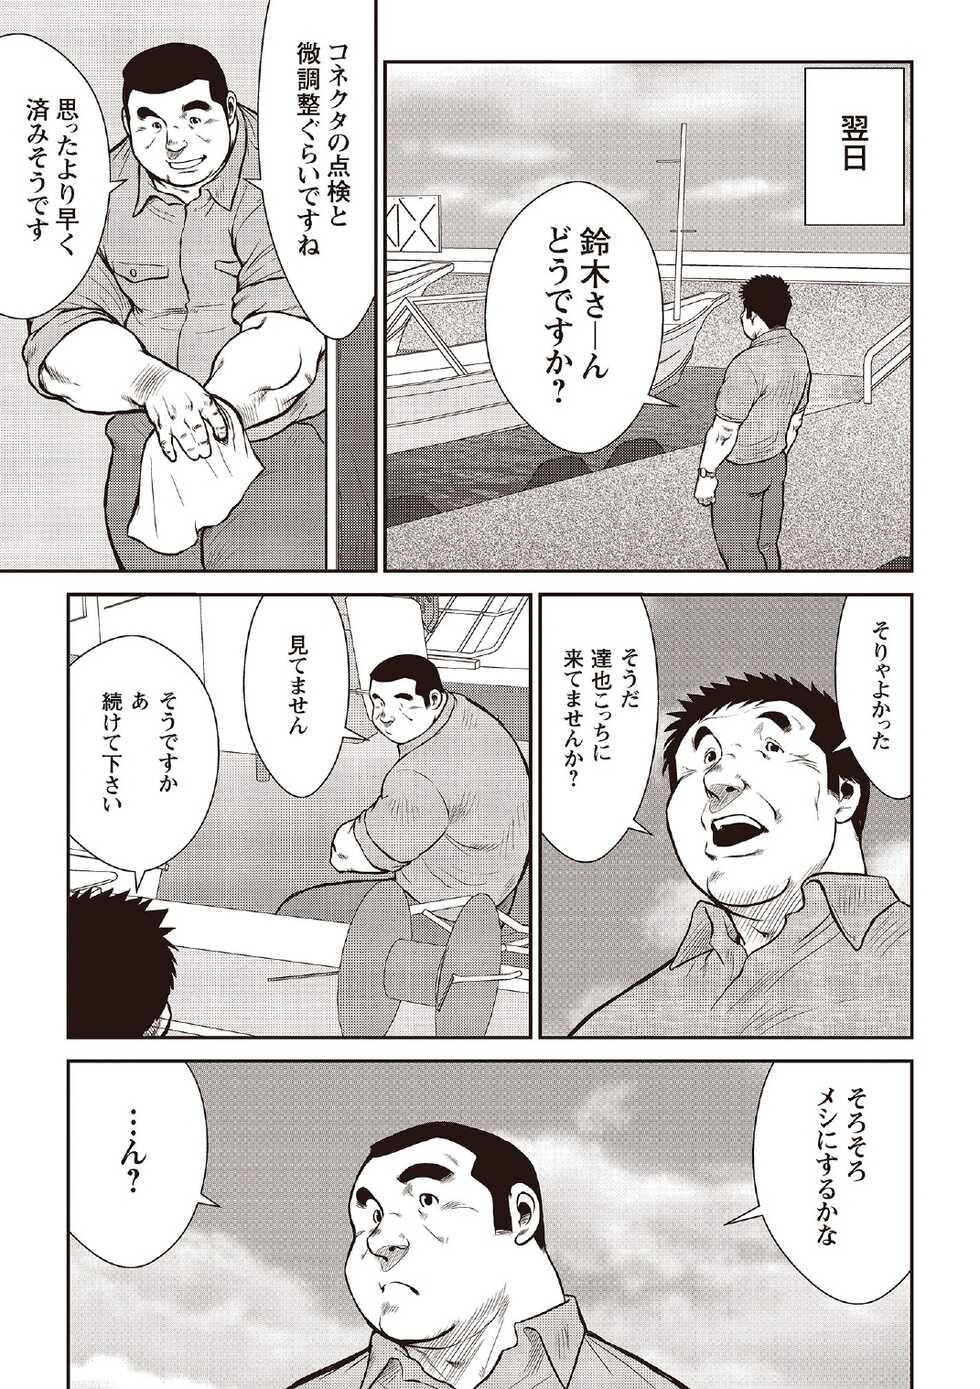 [Ebisubashi Seizou] Ebisubashi Seizou Tanpen Manga Shuu 2 Fuuun! Danshi Ryou [Bunsatsuban] PART 2 Bousou Hantou Taifuu Zensen Ch. 1 + Ch. 2 [Digital] - Page 11